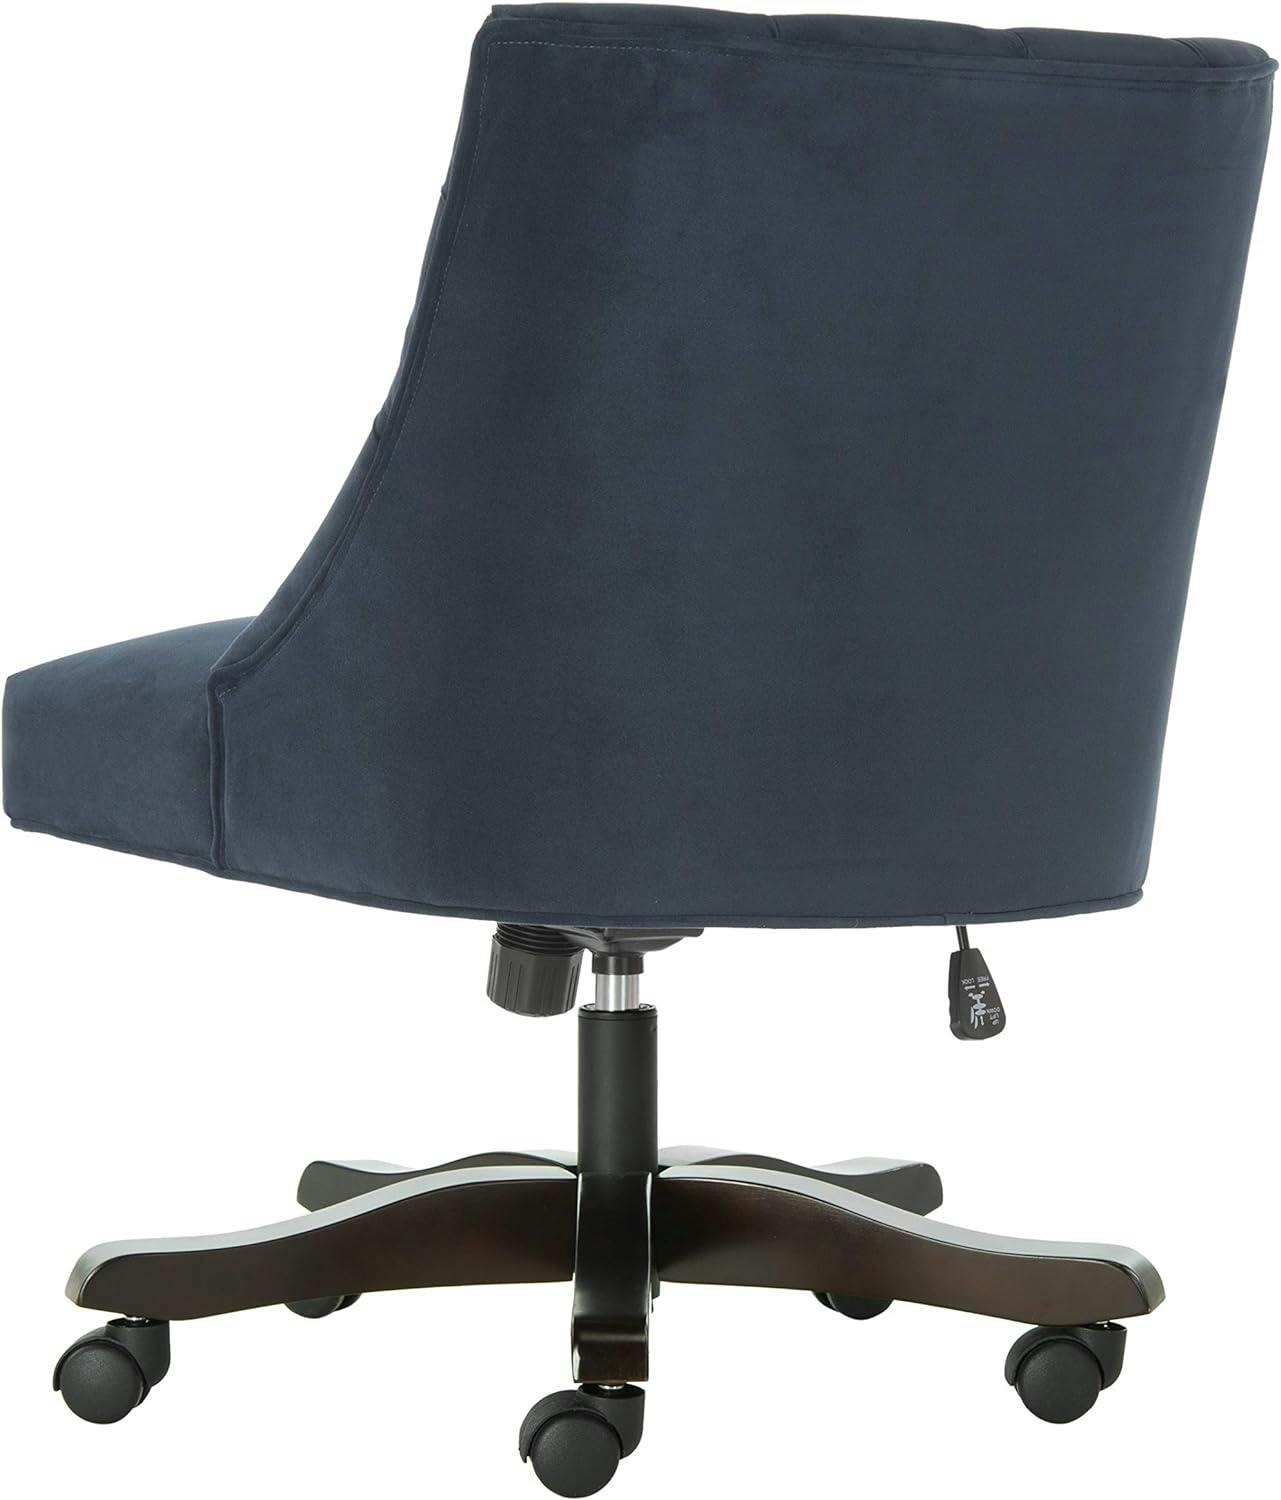 Transitional Soho Navy Velvet Tufted Adjustable Desk Chair